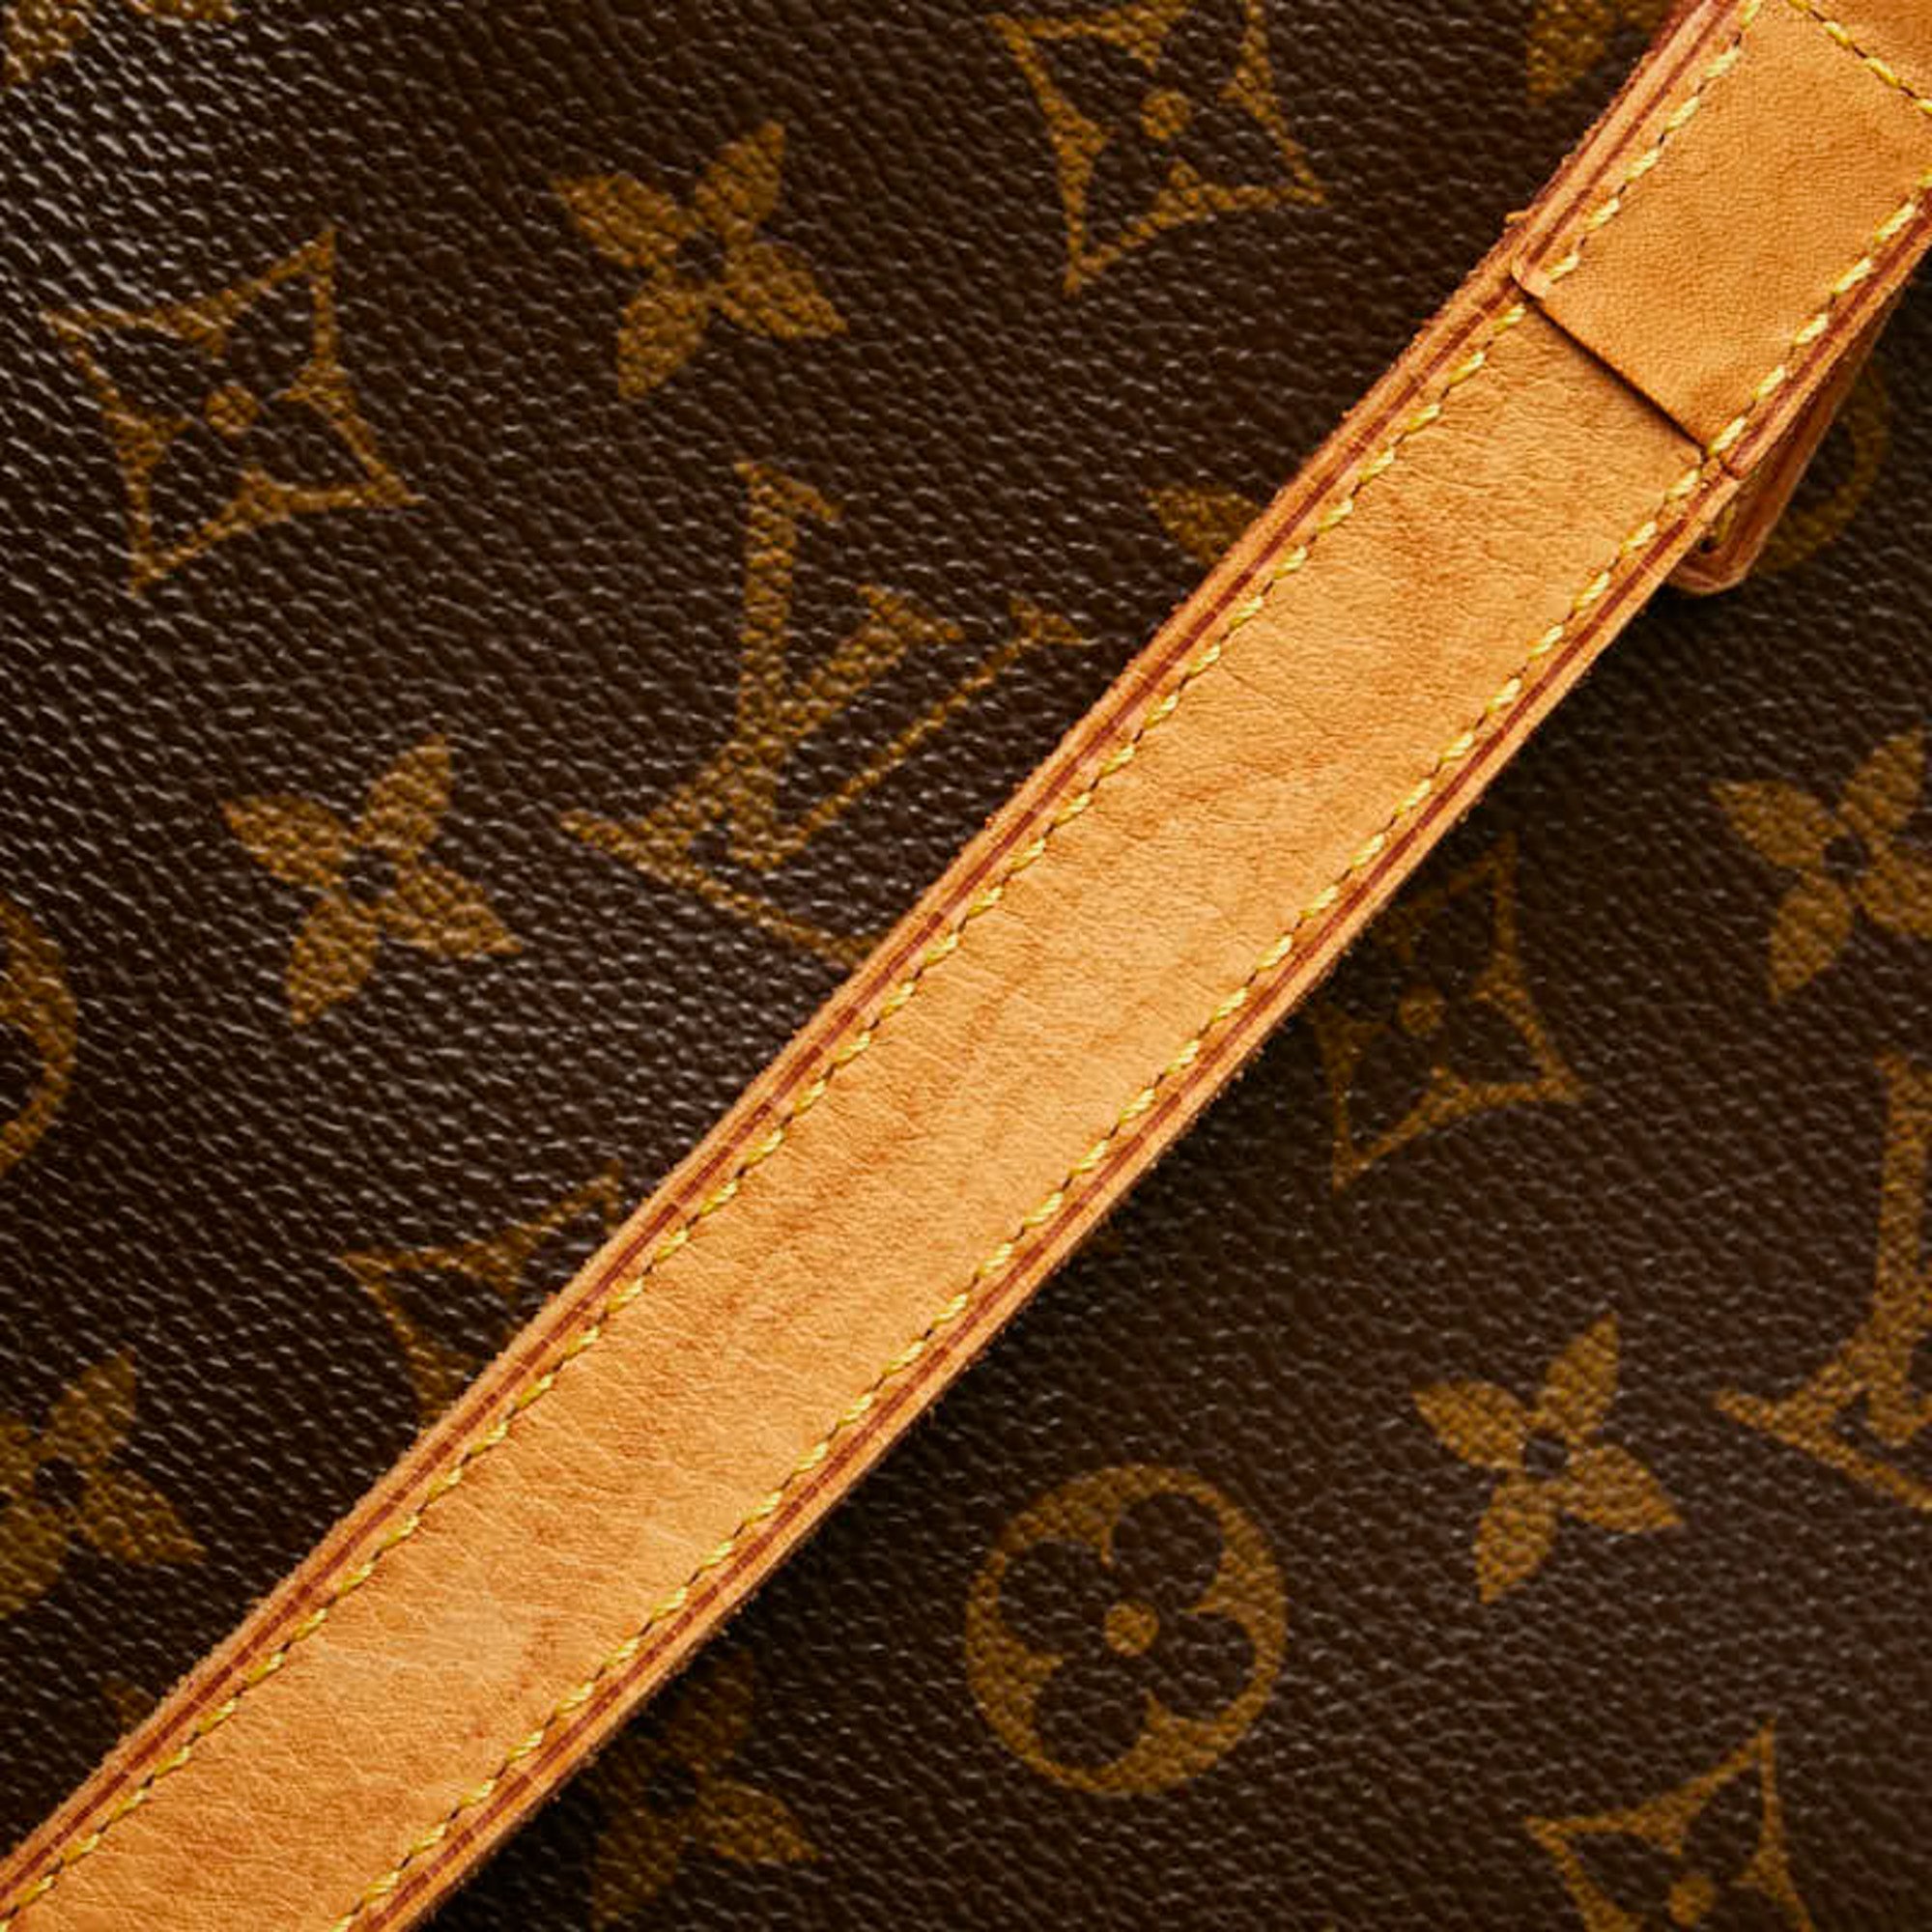 Louis Vuitton Monogram Vavin GM Tote Bag Shoulder M51170 Brown PVC Leather Women's LOUIS VUITTON